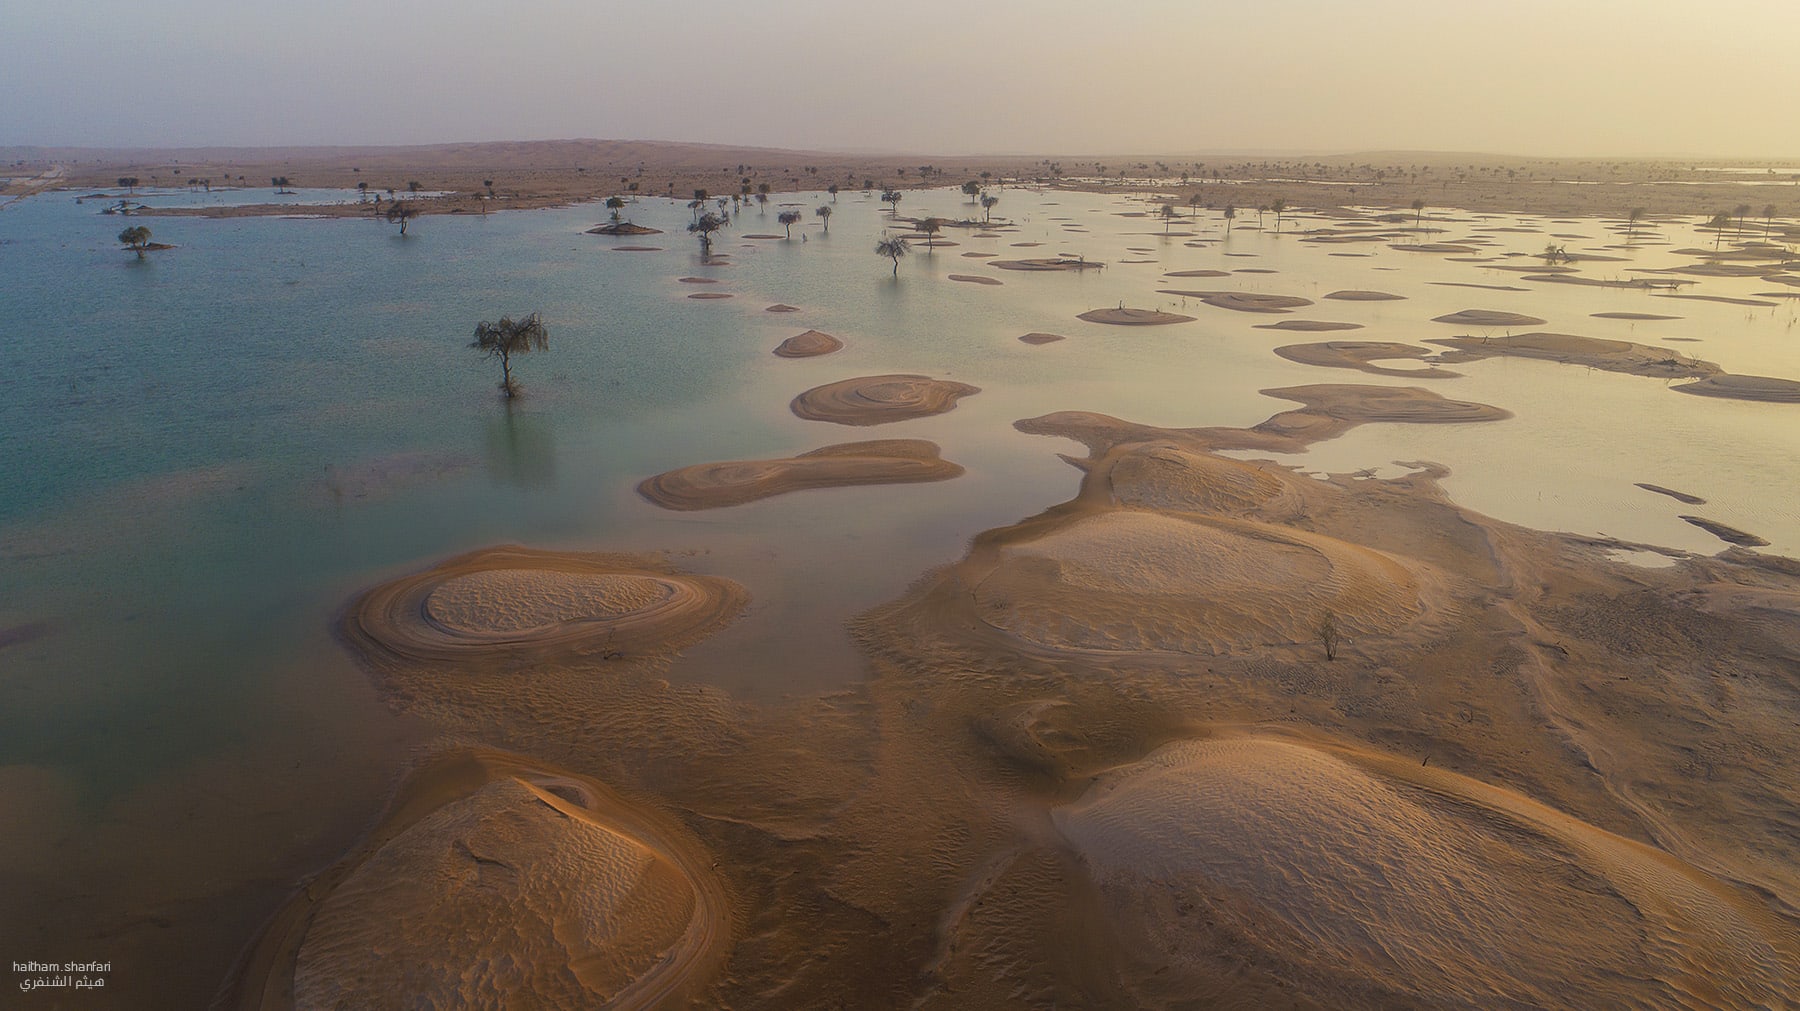 صور تعكس "اللوحة الفنية" لبحيرات في صحراء الربع الخالي